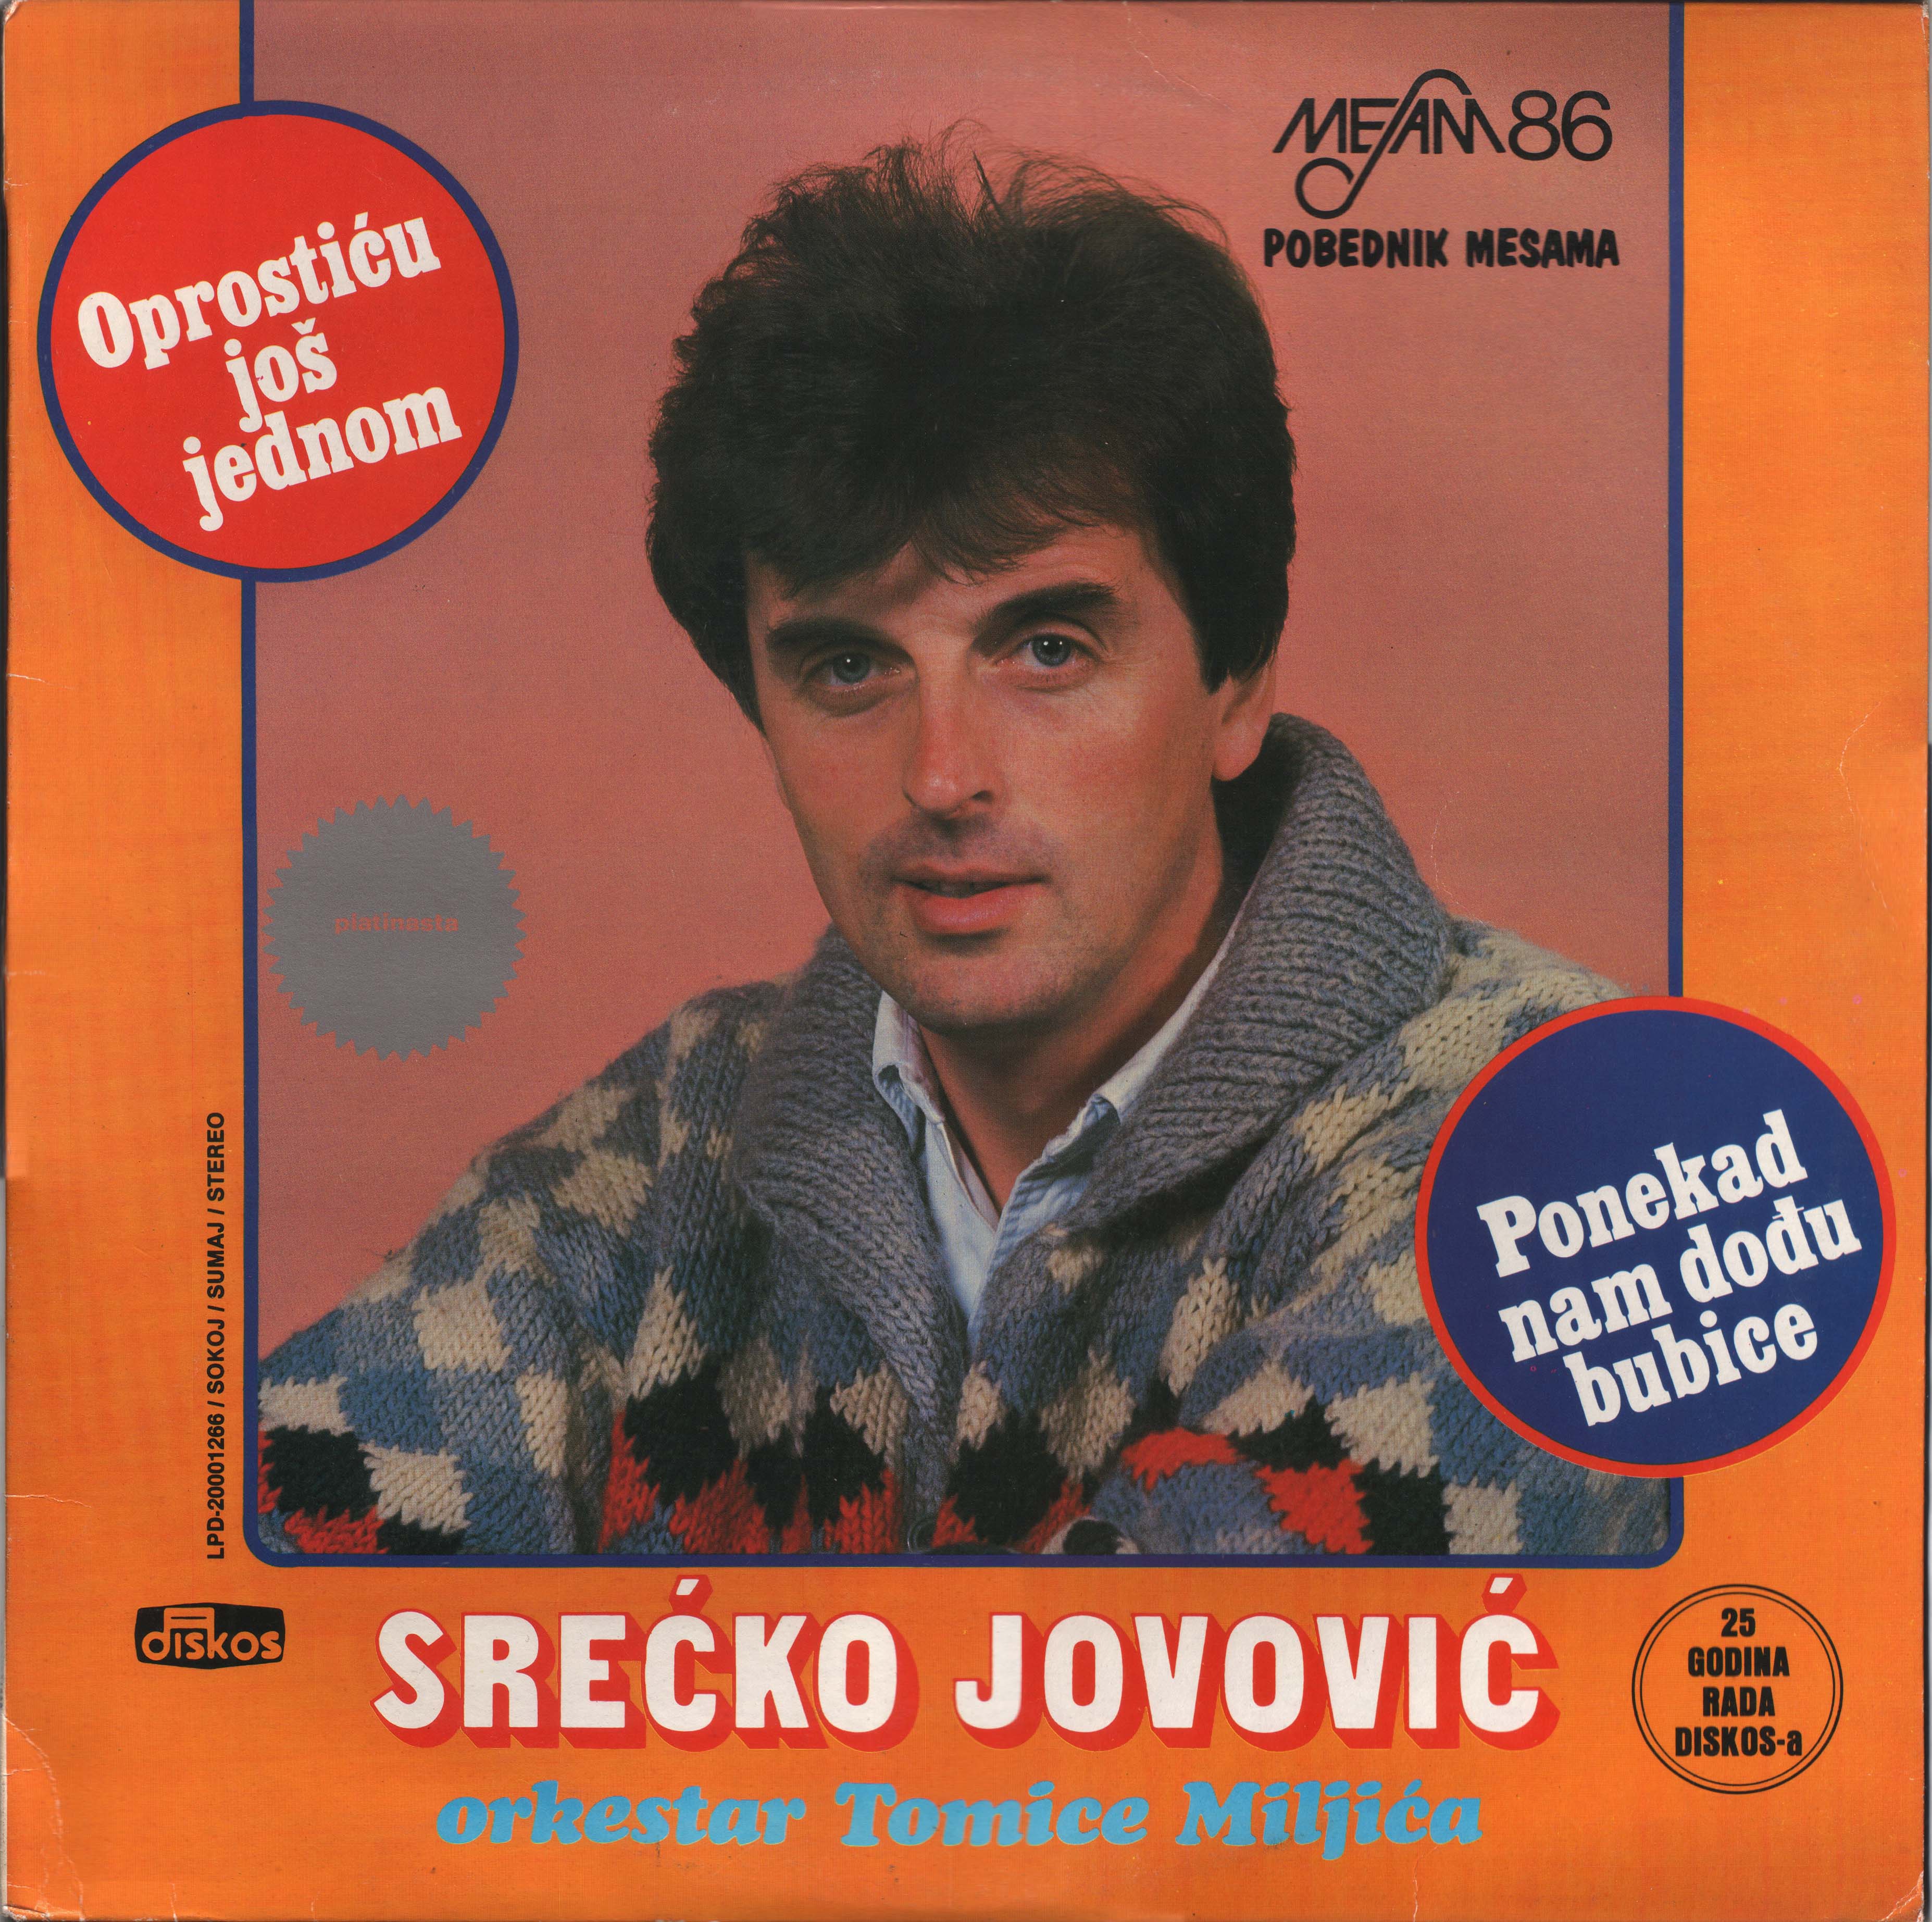 Srecko Jovovic 1986 P